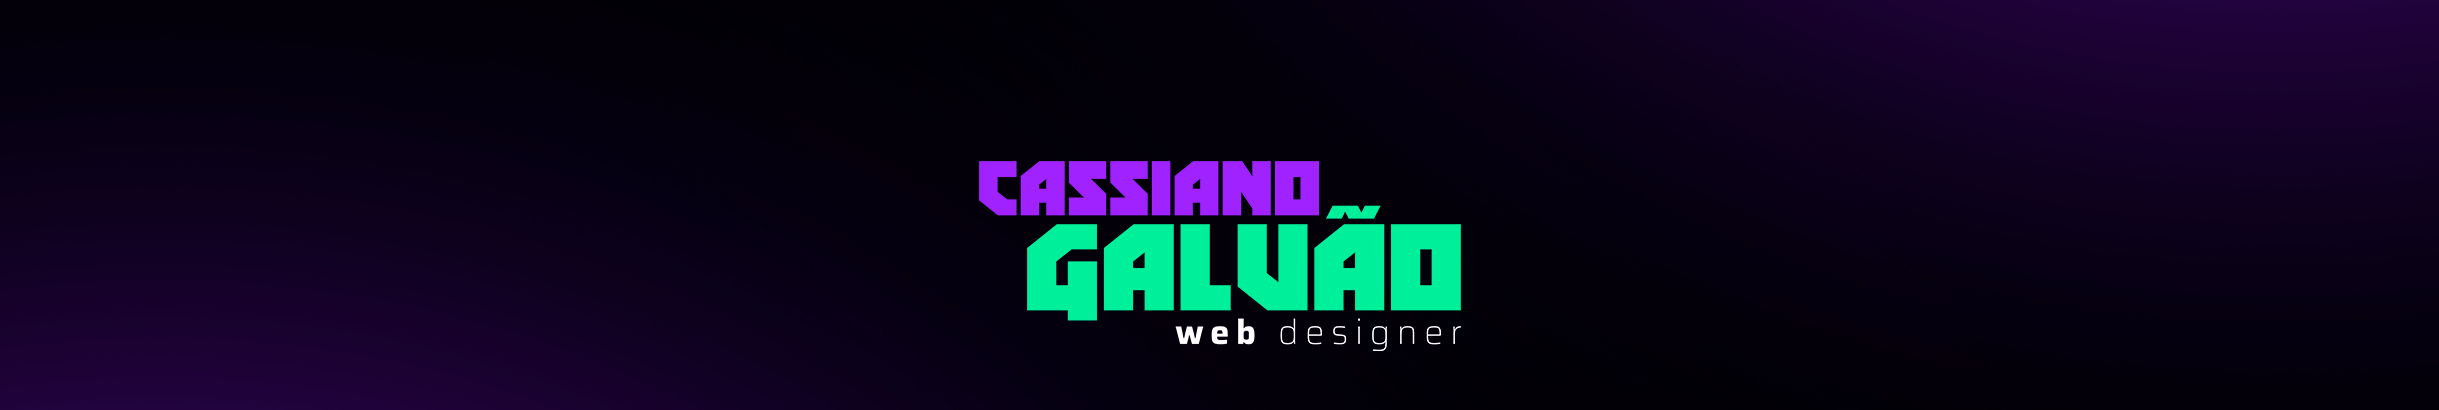 Cassiano Galvão's profile banner